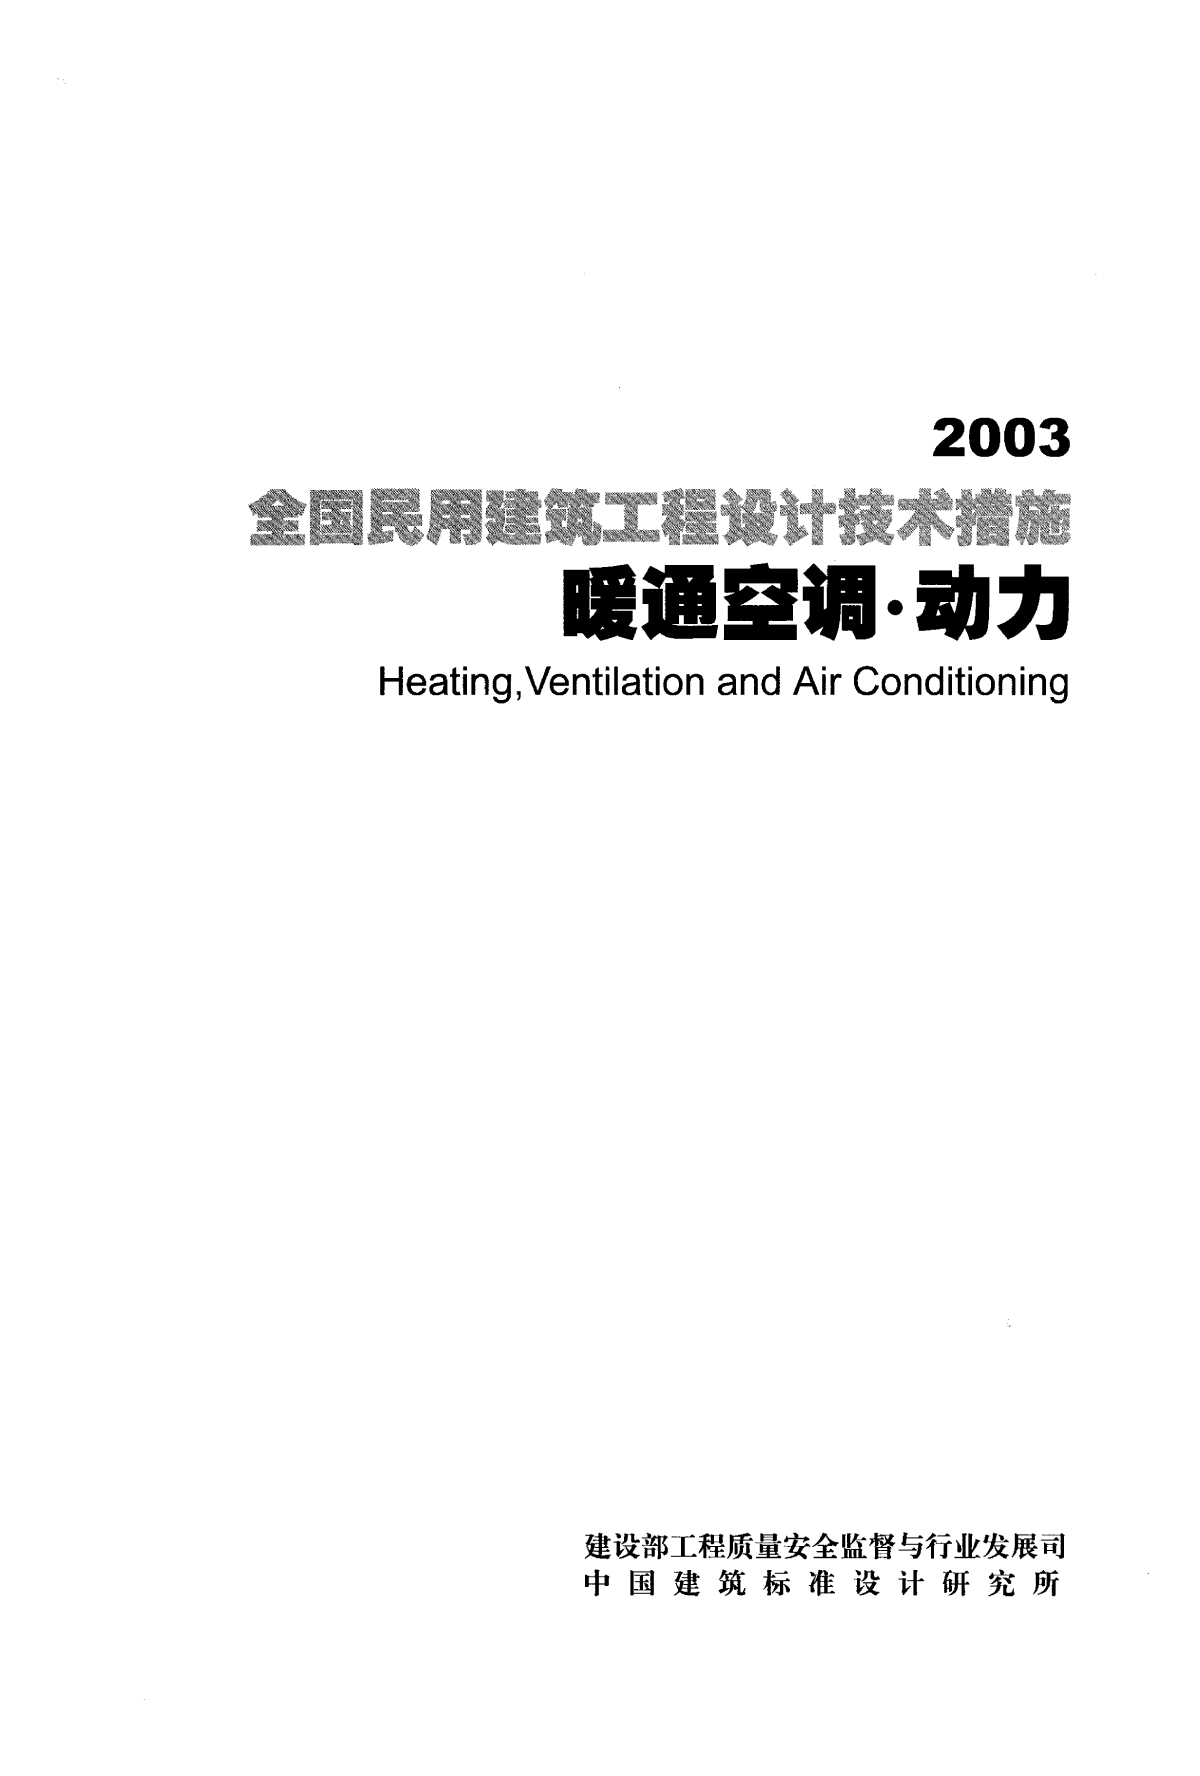 全国民用建筑工程设计技术措施-暖通空调-动力-2003